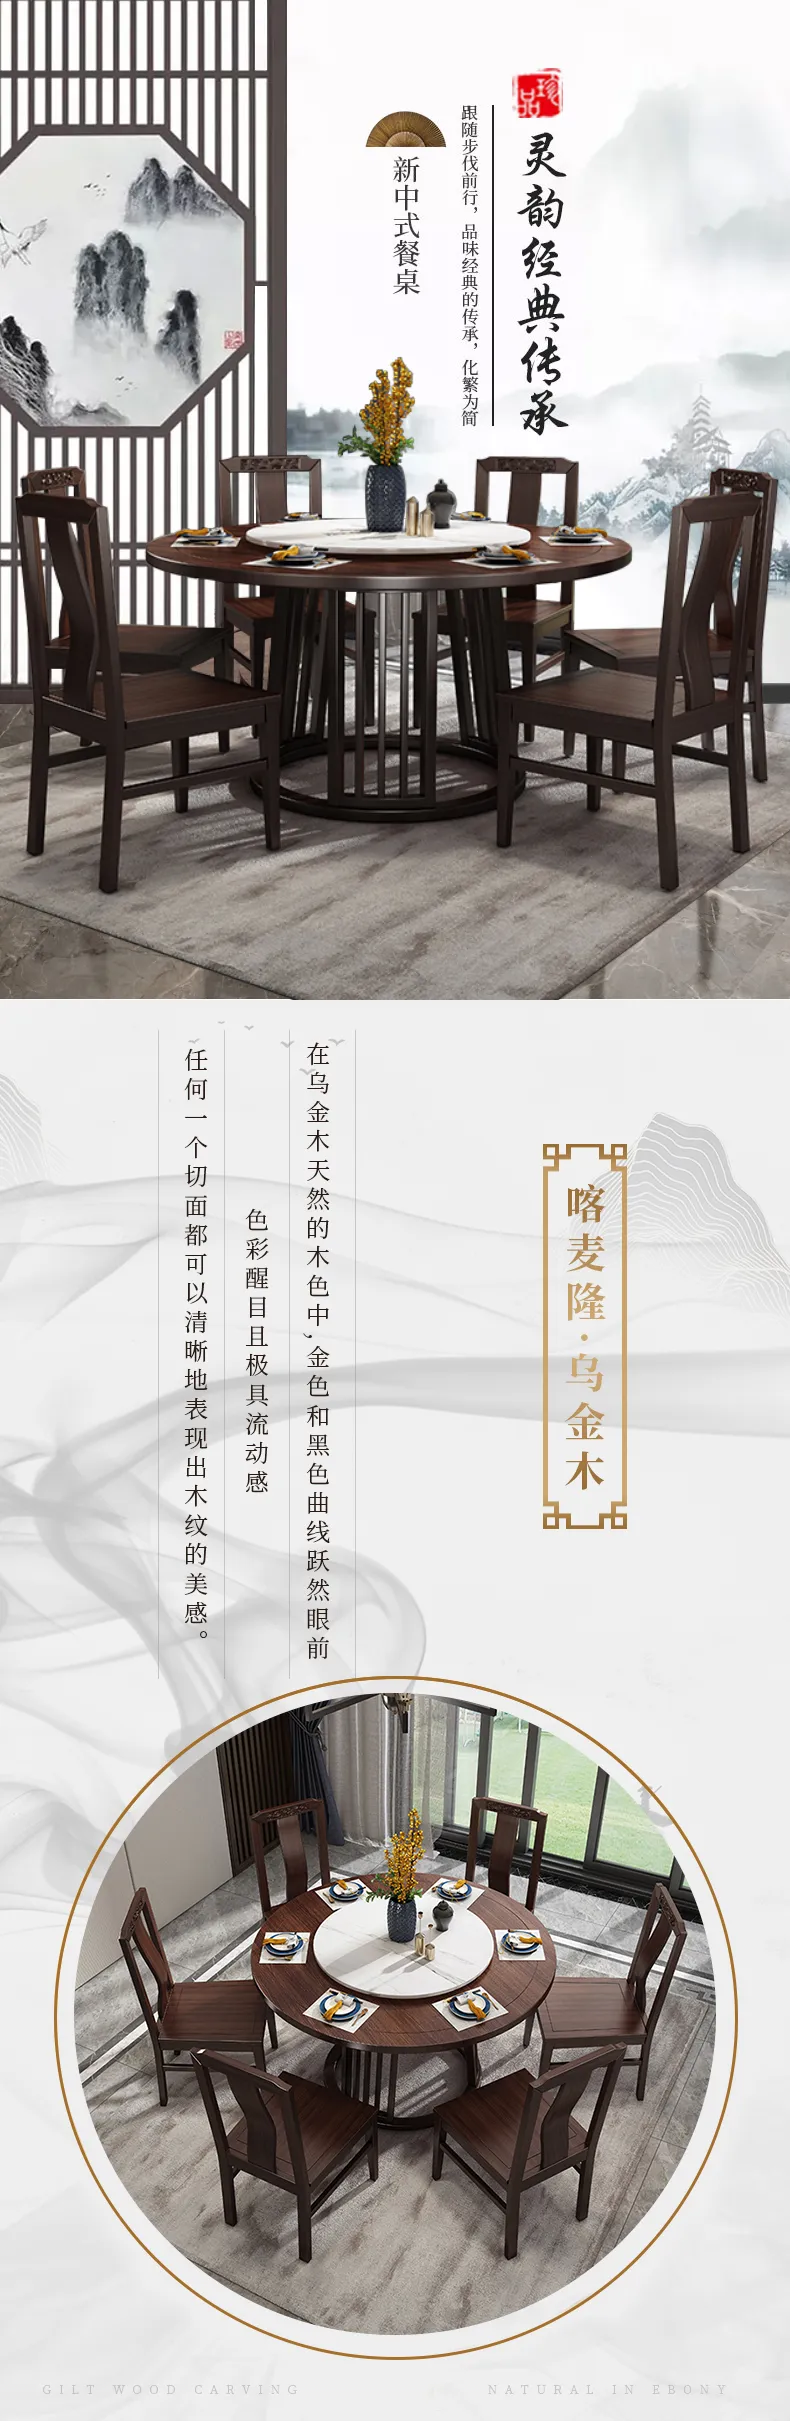 华松居 乌金木新中式实木餐桌简约家用圆桌饭桌餐桌椅 #2002(图1)